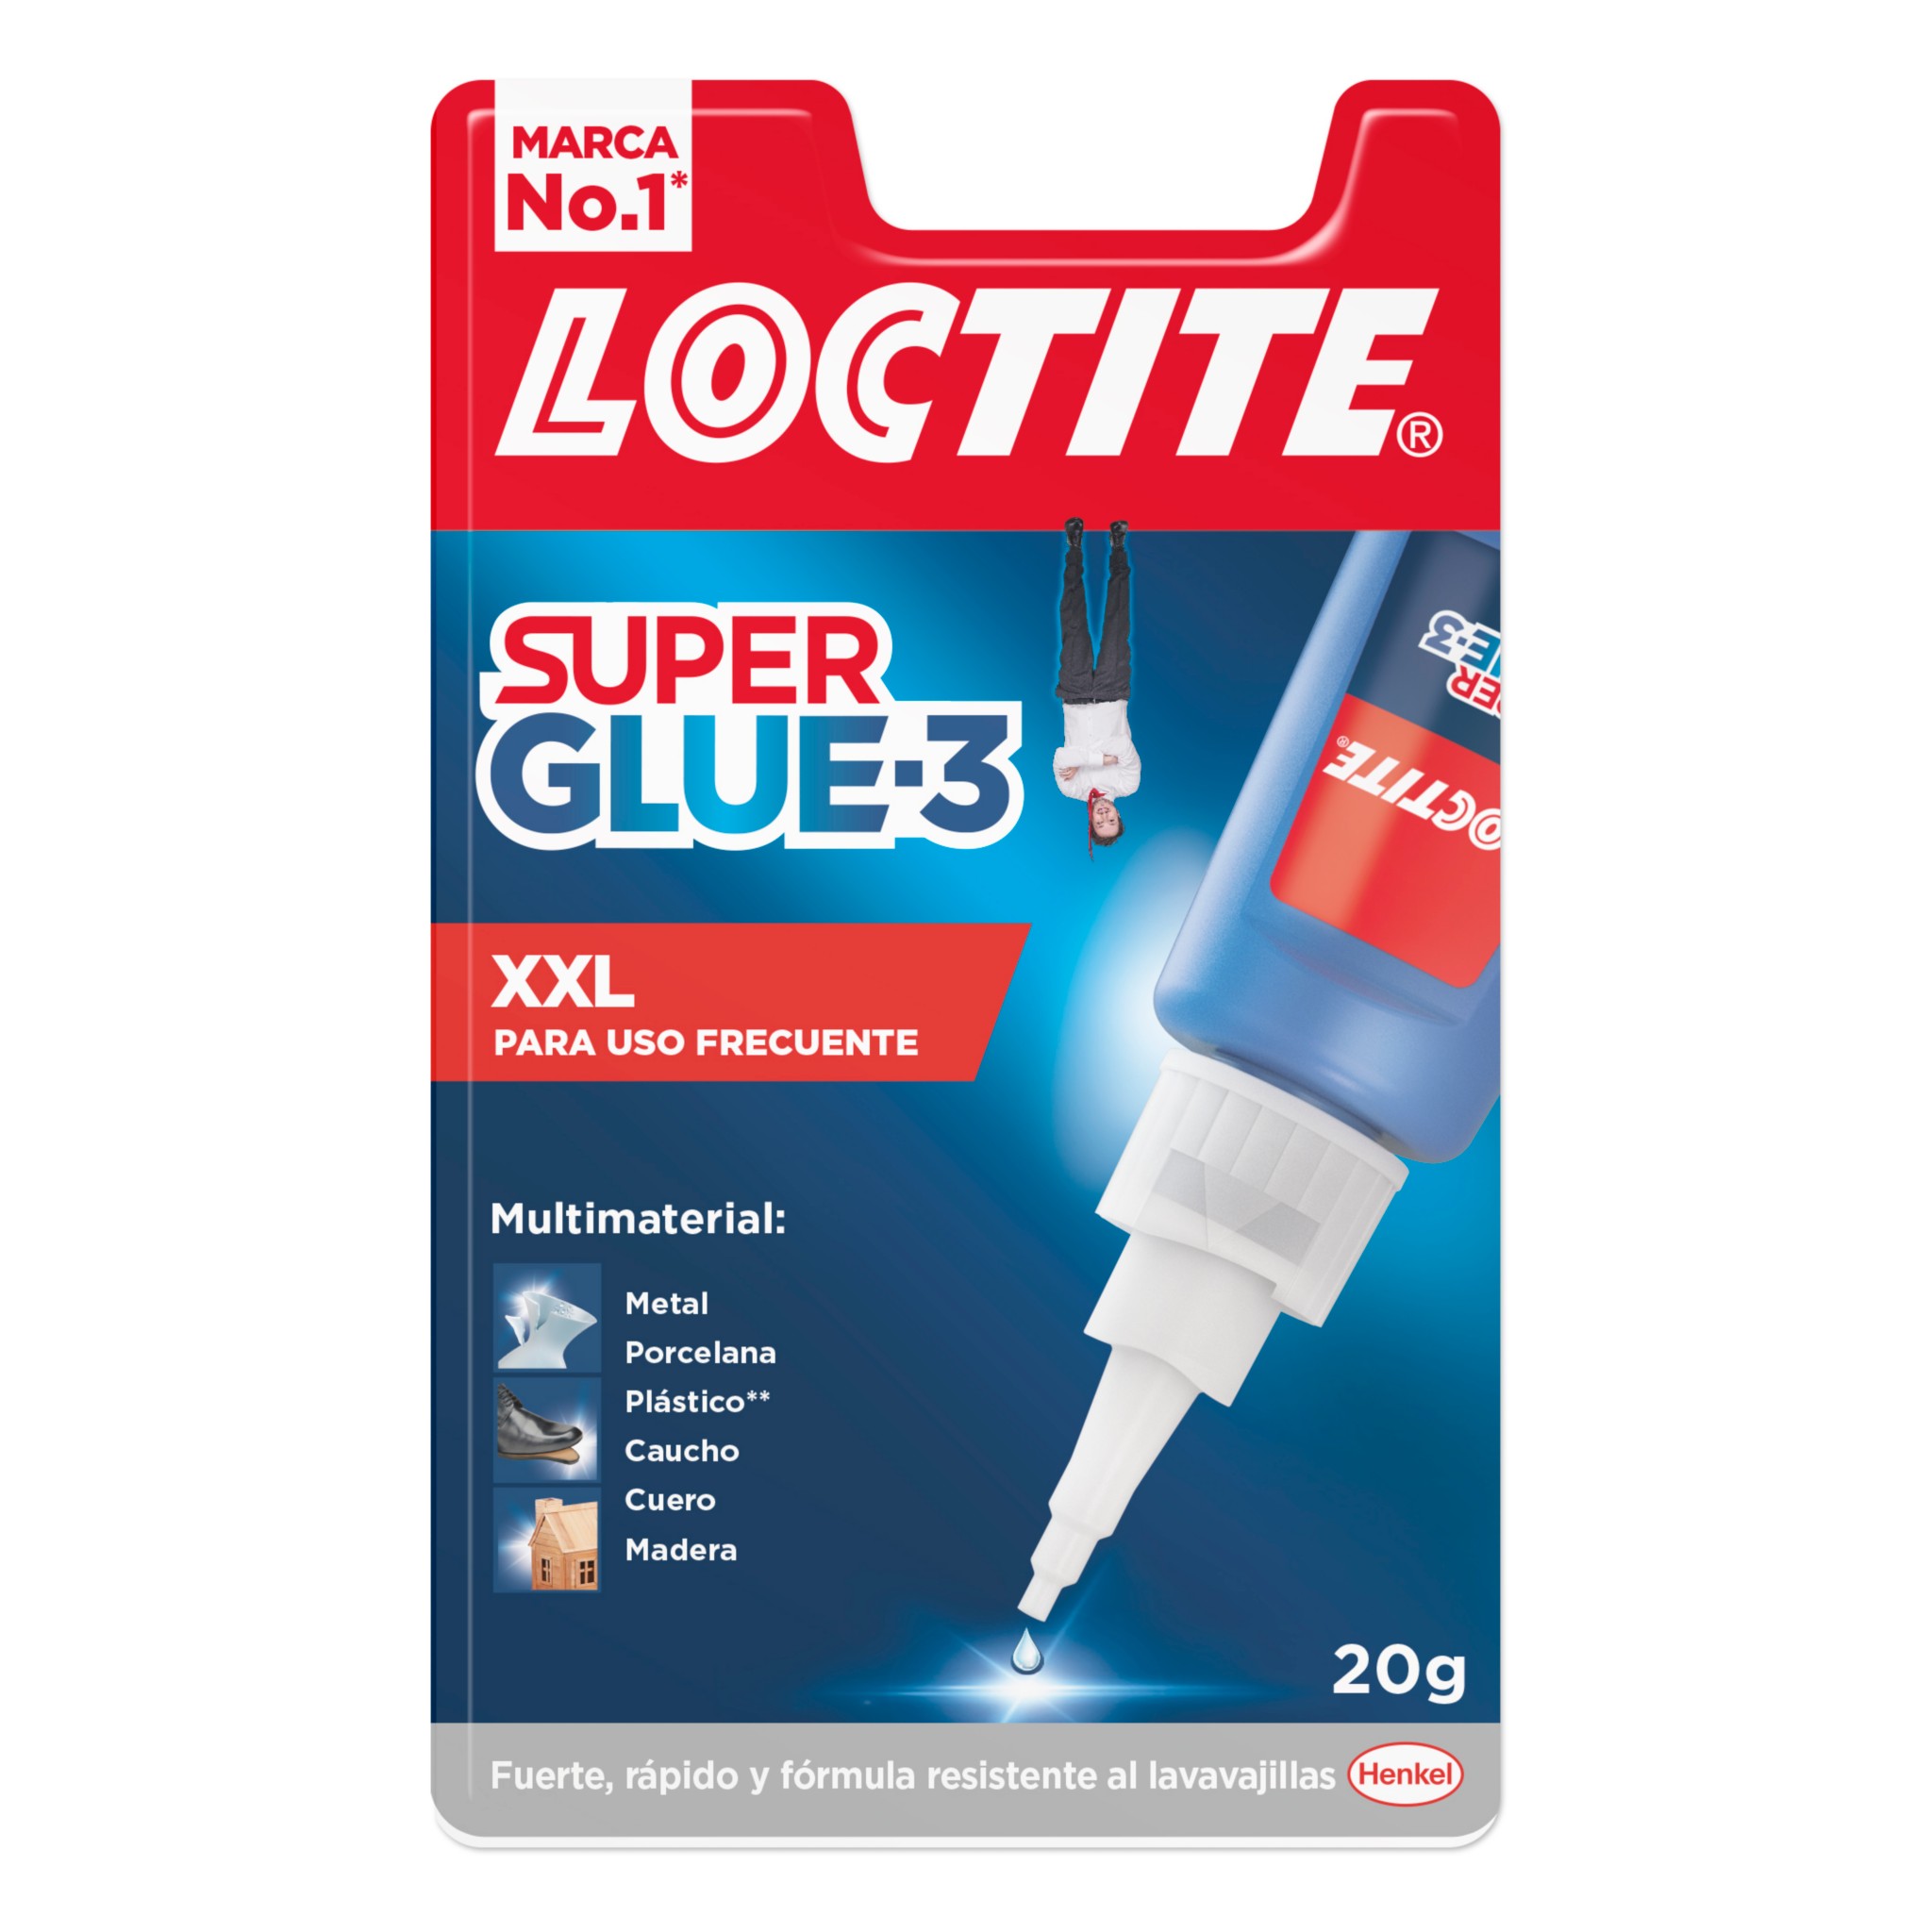 Super Glue-3 XXL